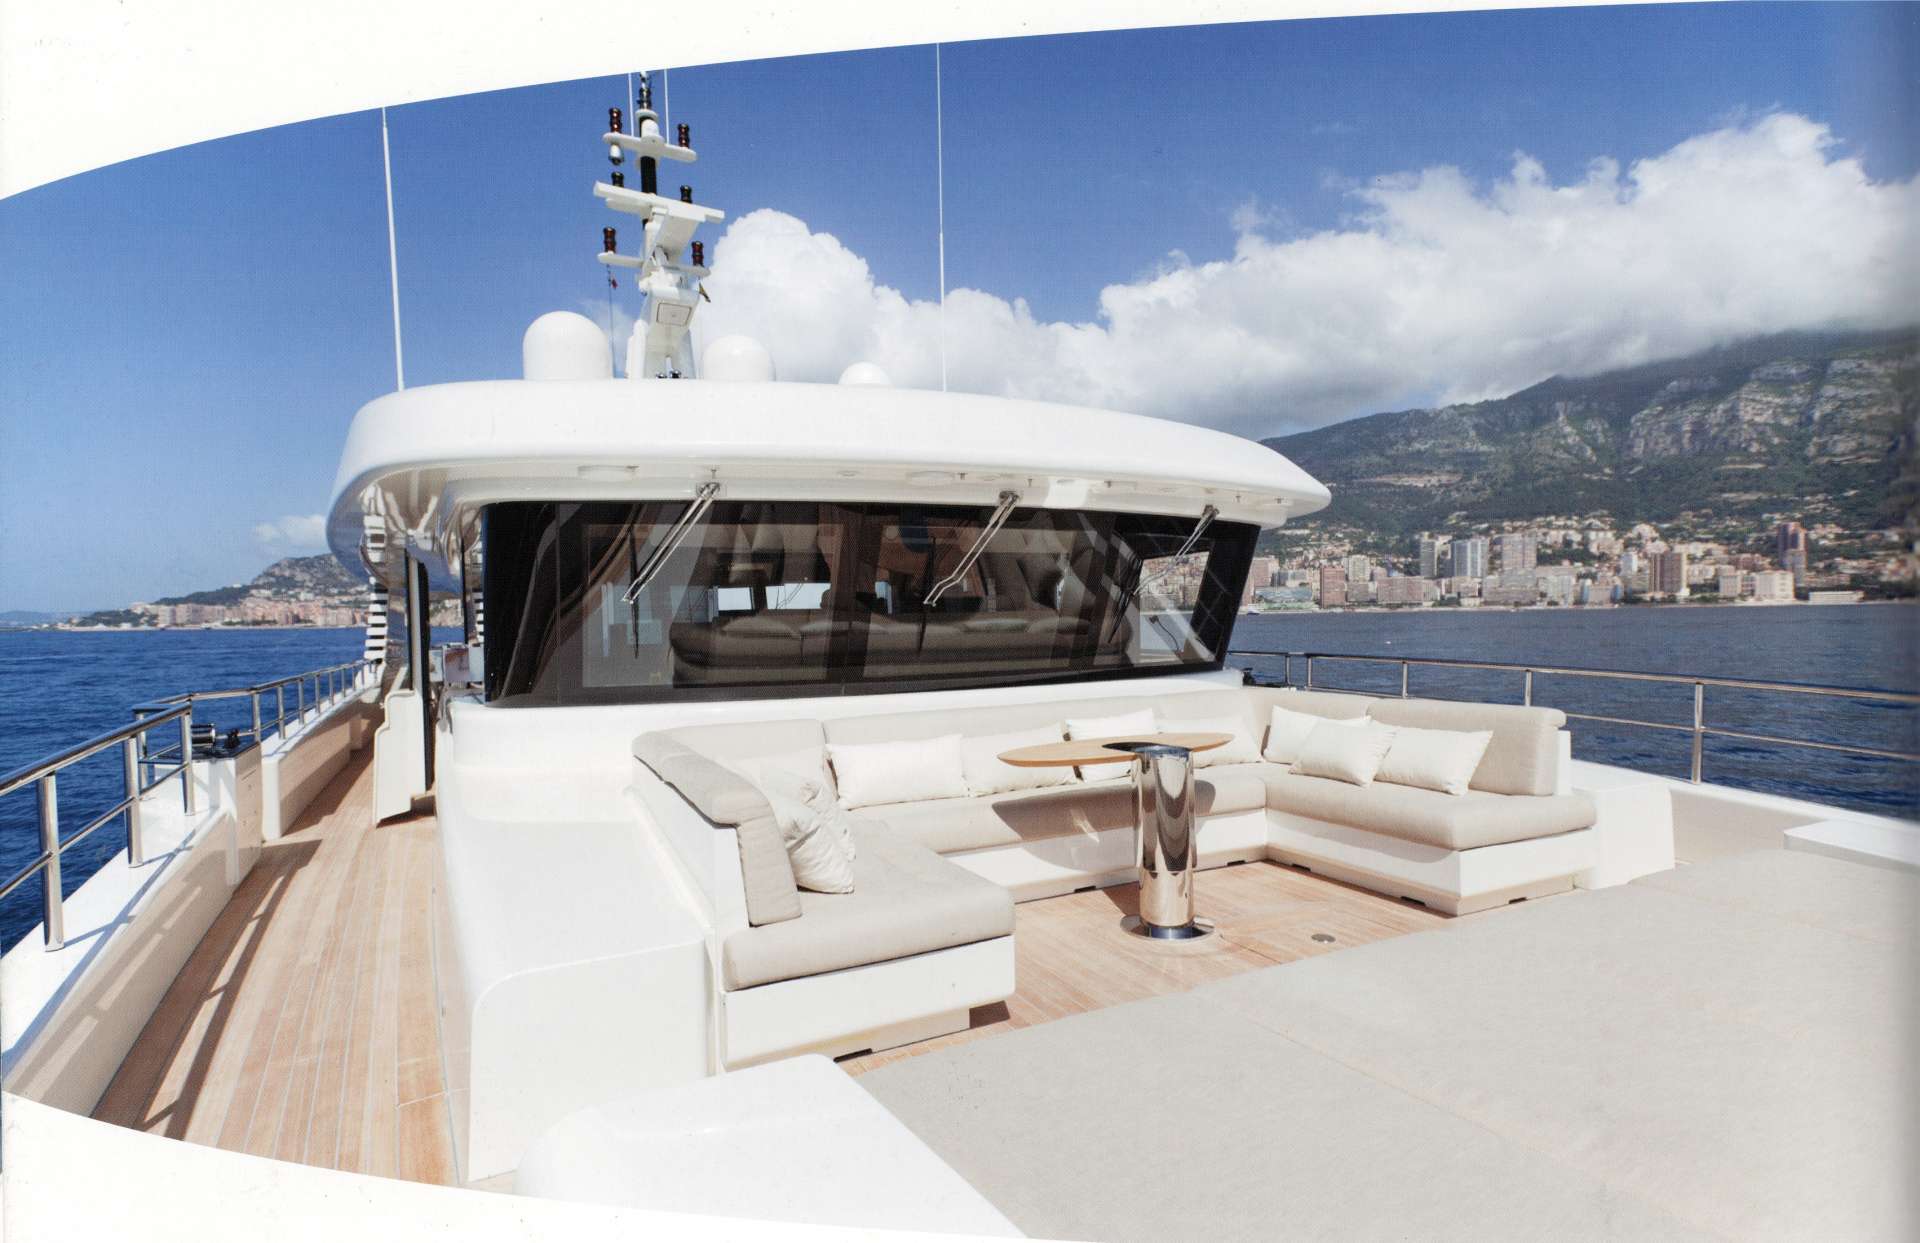 aslec 4 - Gulet charter worldwide & Boat hire in Fr. Riviera & Tyrrhenian Sea 2